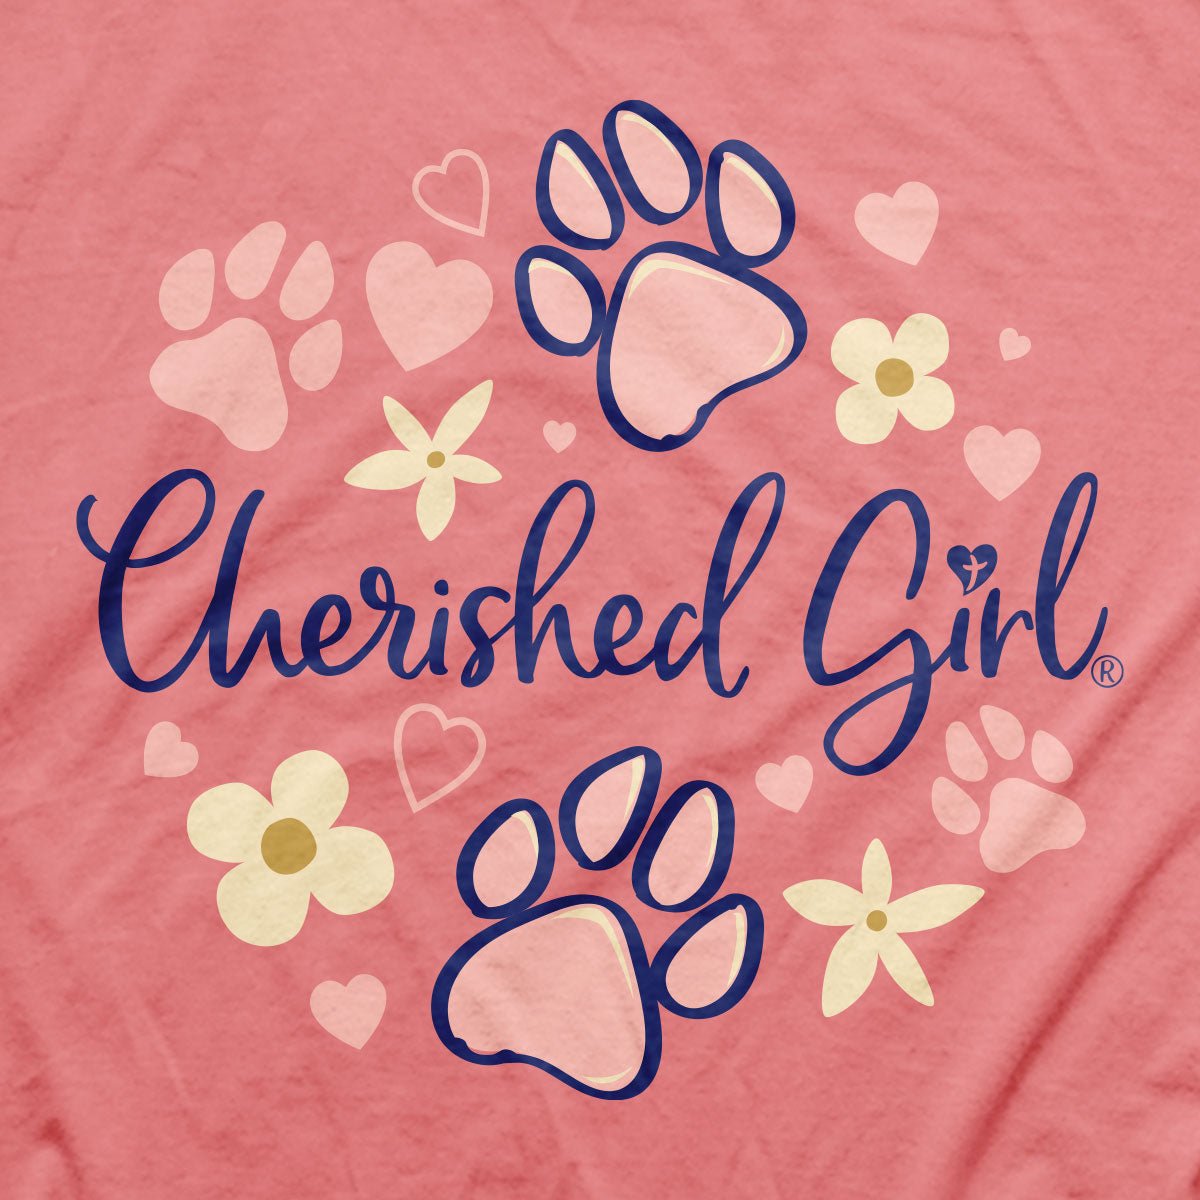 Cherished Girl Womens T-Shirt My Dog | 2FruitBearers